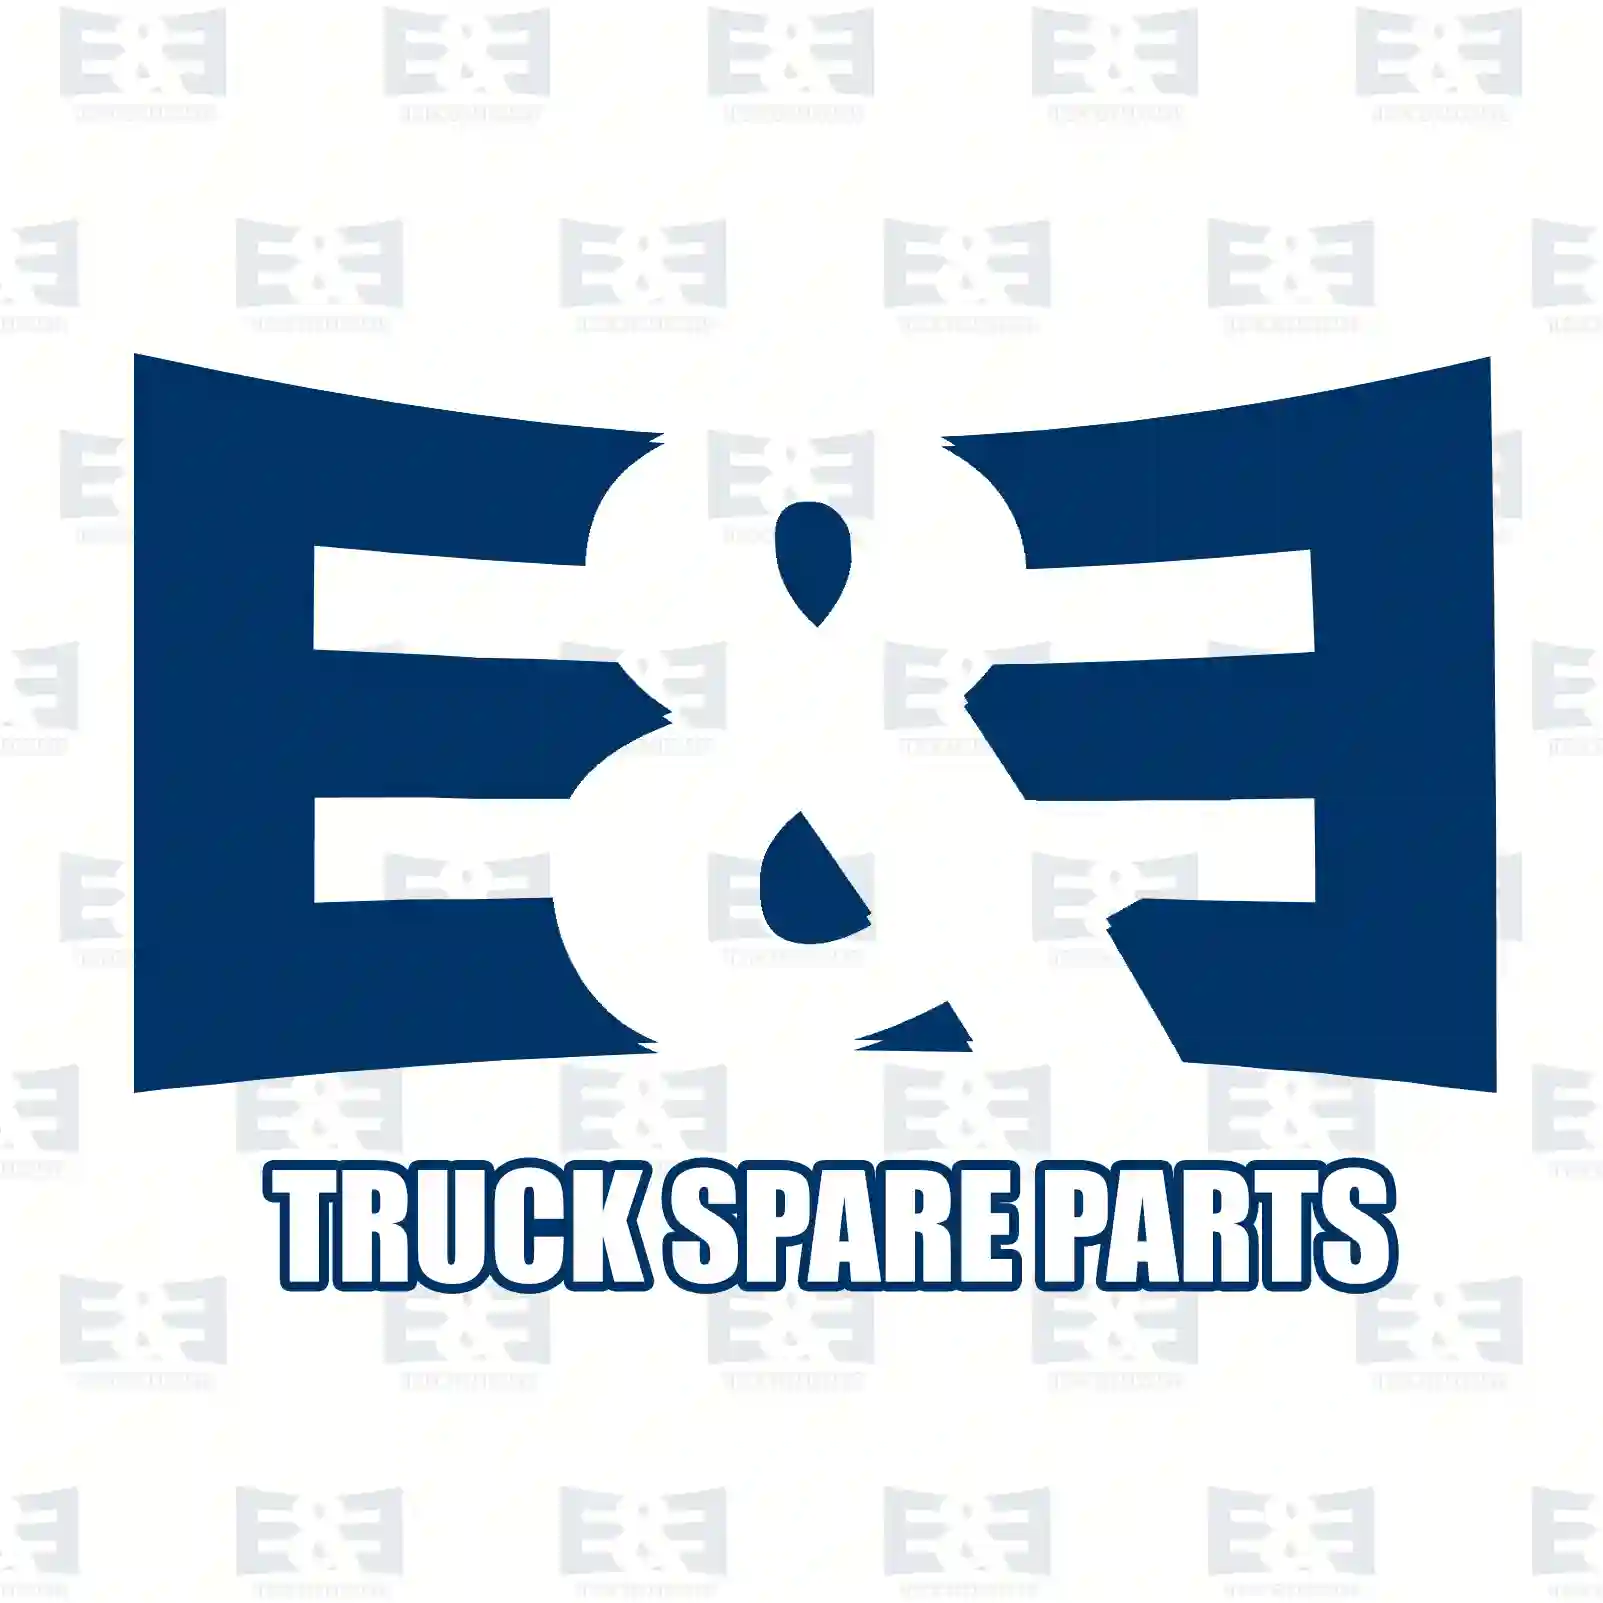 Brake caliper, 2E2296068, #YOK ||  2E2296068 E&E Truck Spare Parts | Truck Spare Parts, Auotomotive Spare Parts Brake caliper, 2E2296068, #YOK ||  2E2296068 E&E Truck Spare Parts | Truck Spare Parts, Auotomotive Spare Parts